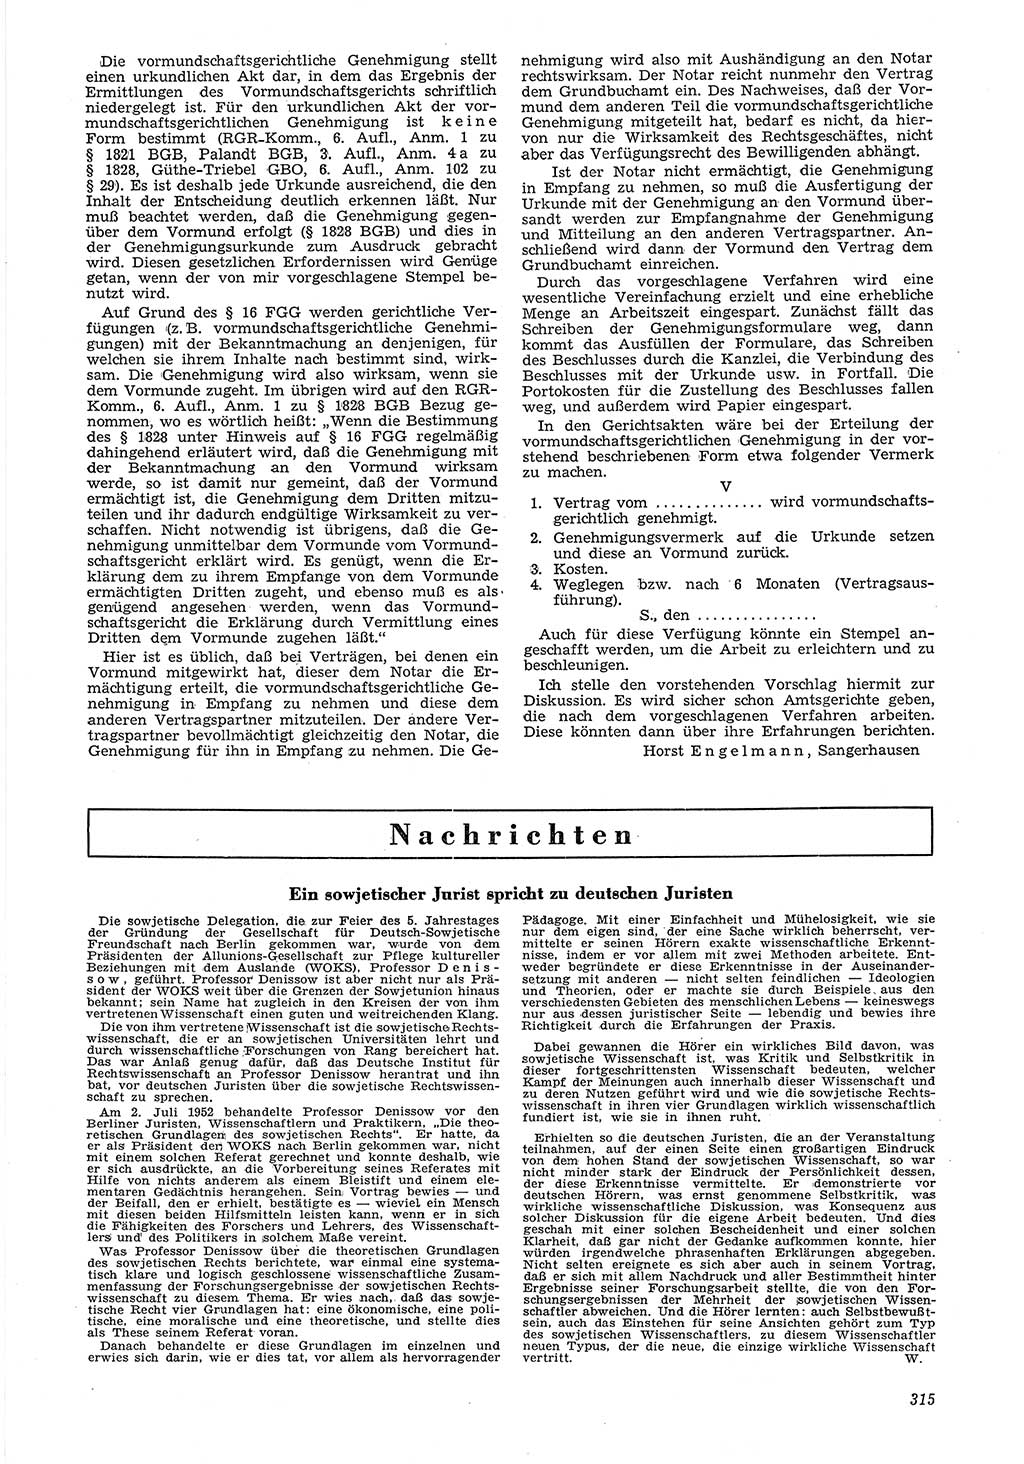 Neue Justiz (NJ), Zeitschrift für Recht und Rechtswissenschaft [Deutsche Demokratische Republik (DDR)], 6. Jahrgang 1952, Seite 315 (NJ DDR 1952, S. 315)